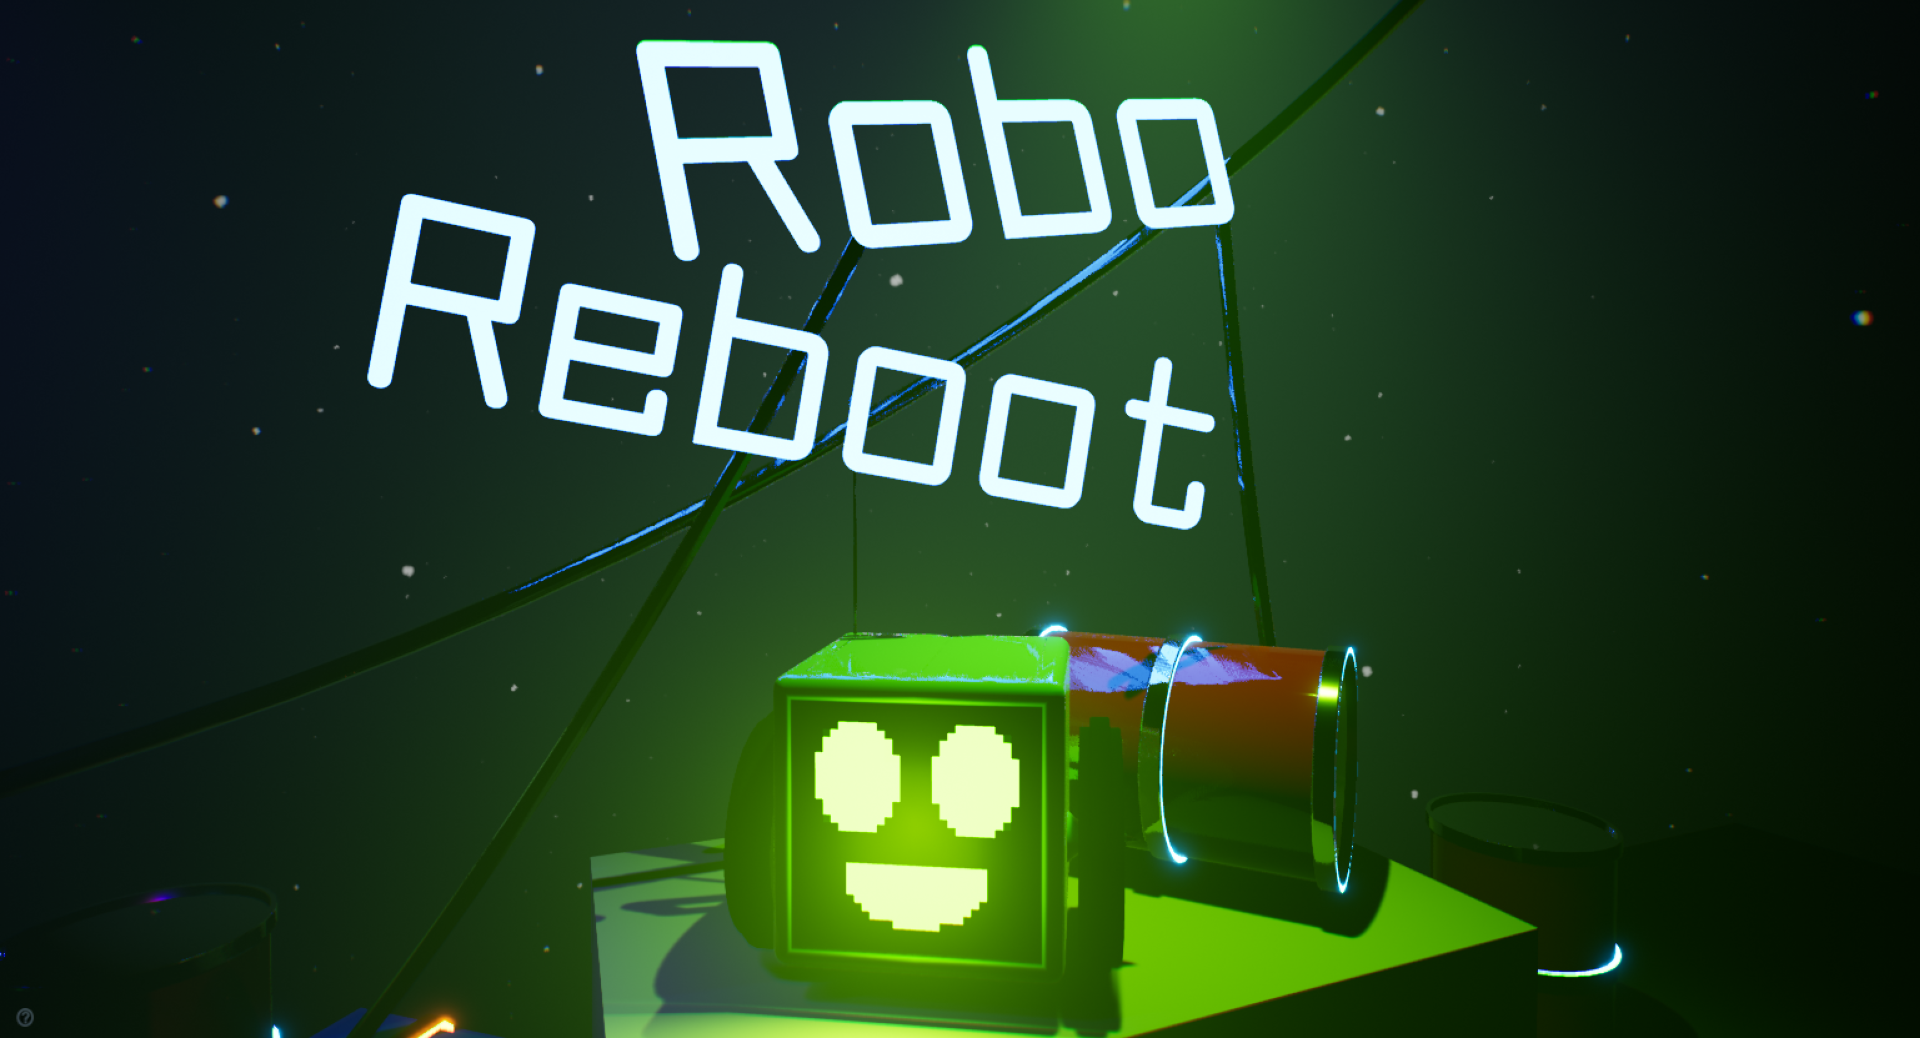 Robo Reboot